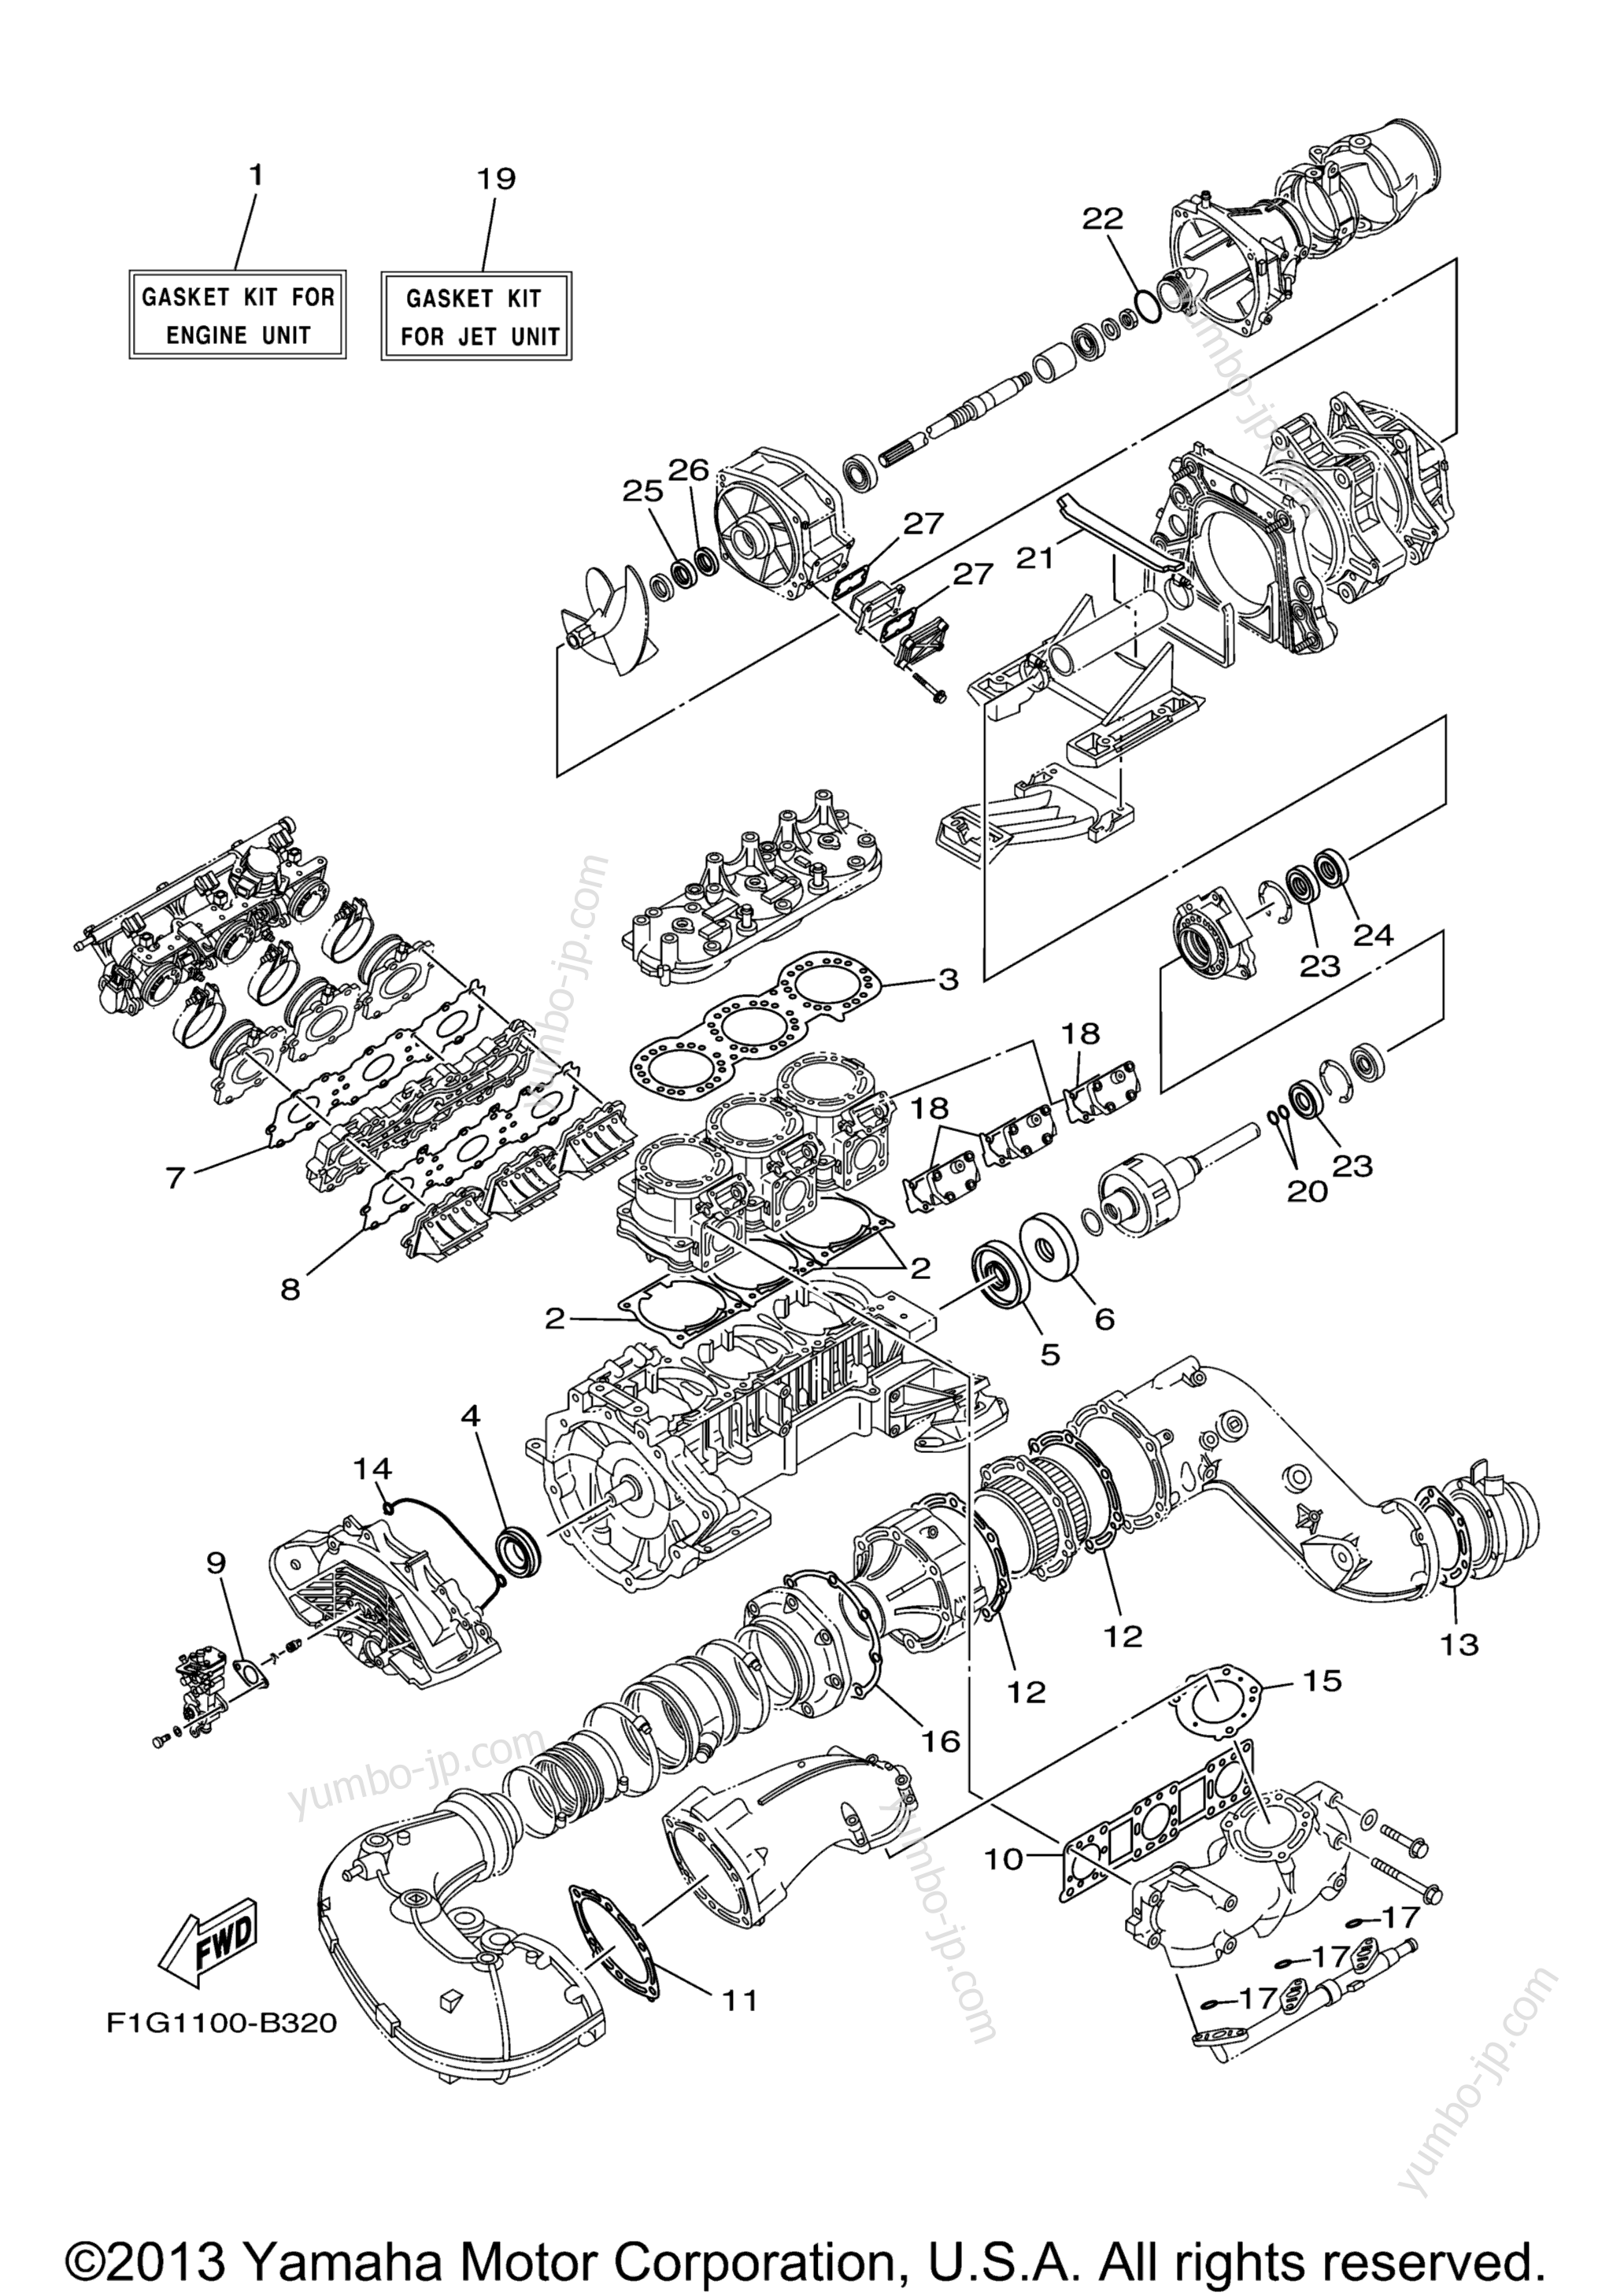 Repair Kit 1 для гидроциклов YAMAHA GP1300R (GP1300CC) CA 2004 г.